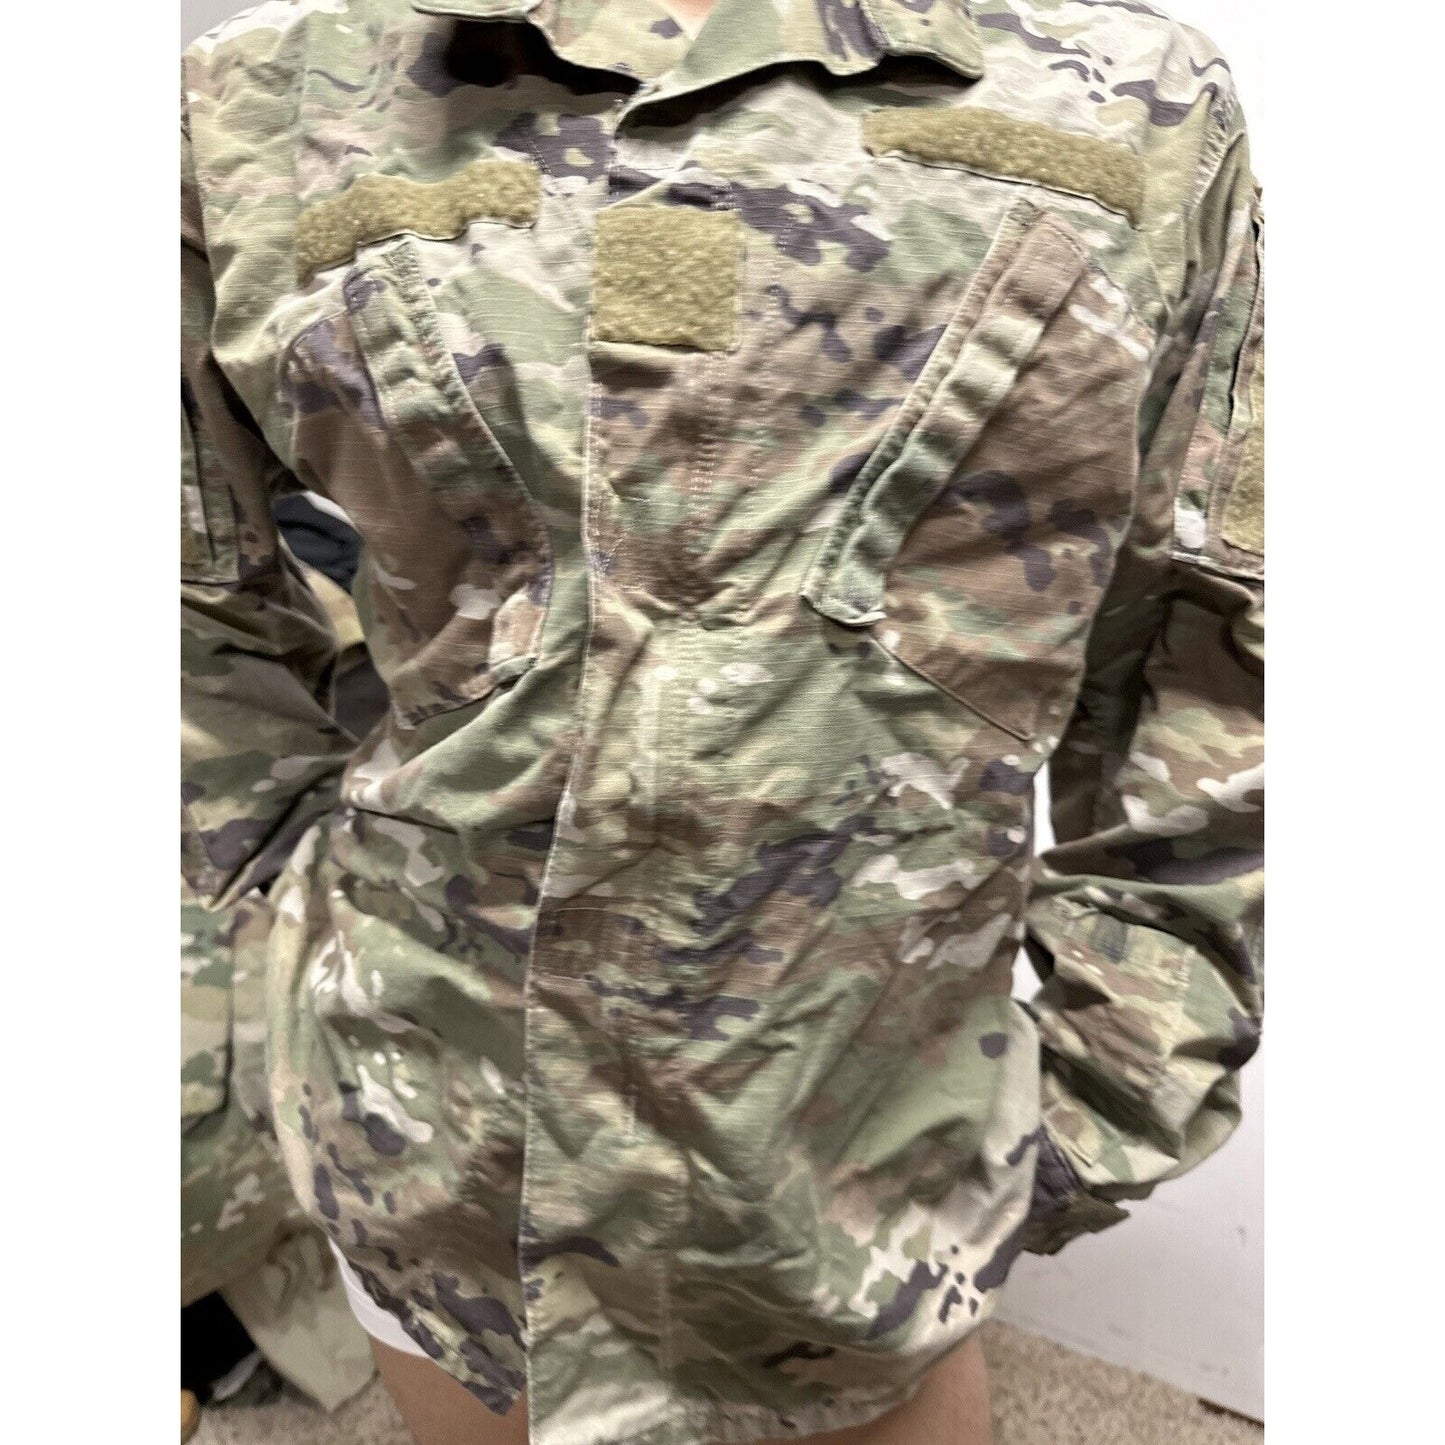 Men’s Ocp Army Combat Uniform Large Long Top Blouse Space Force